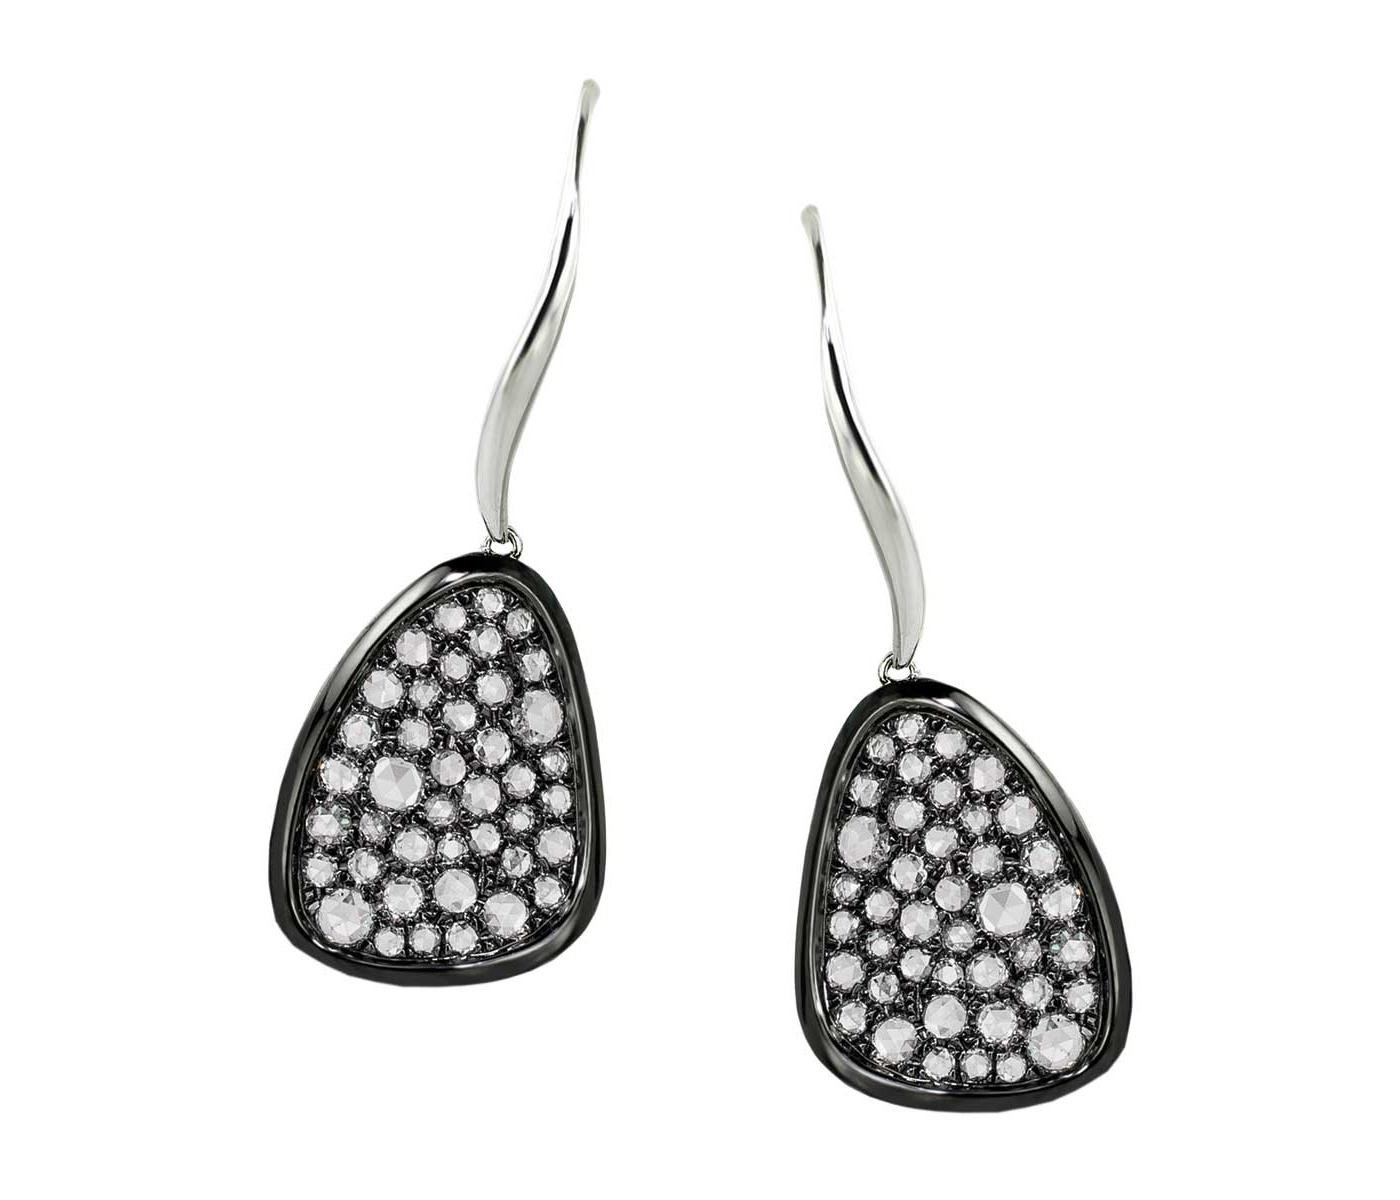 Earrings by Sophia by Design